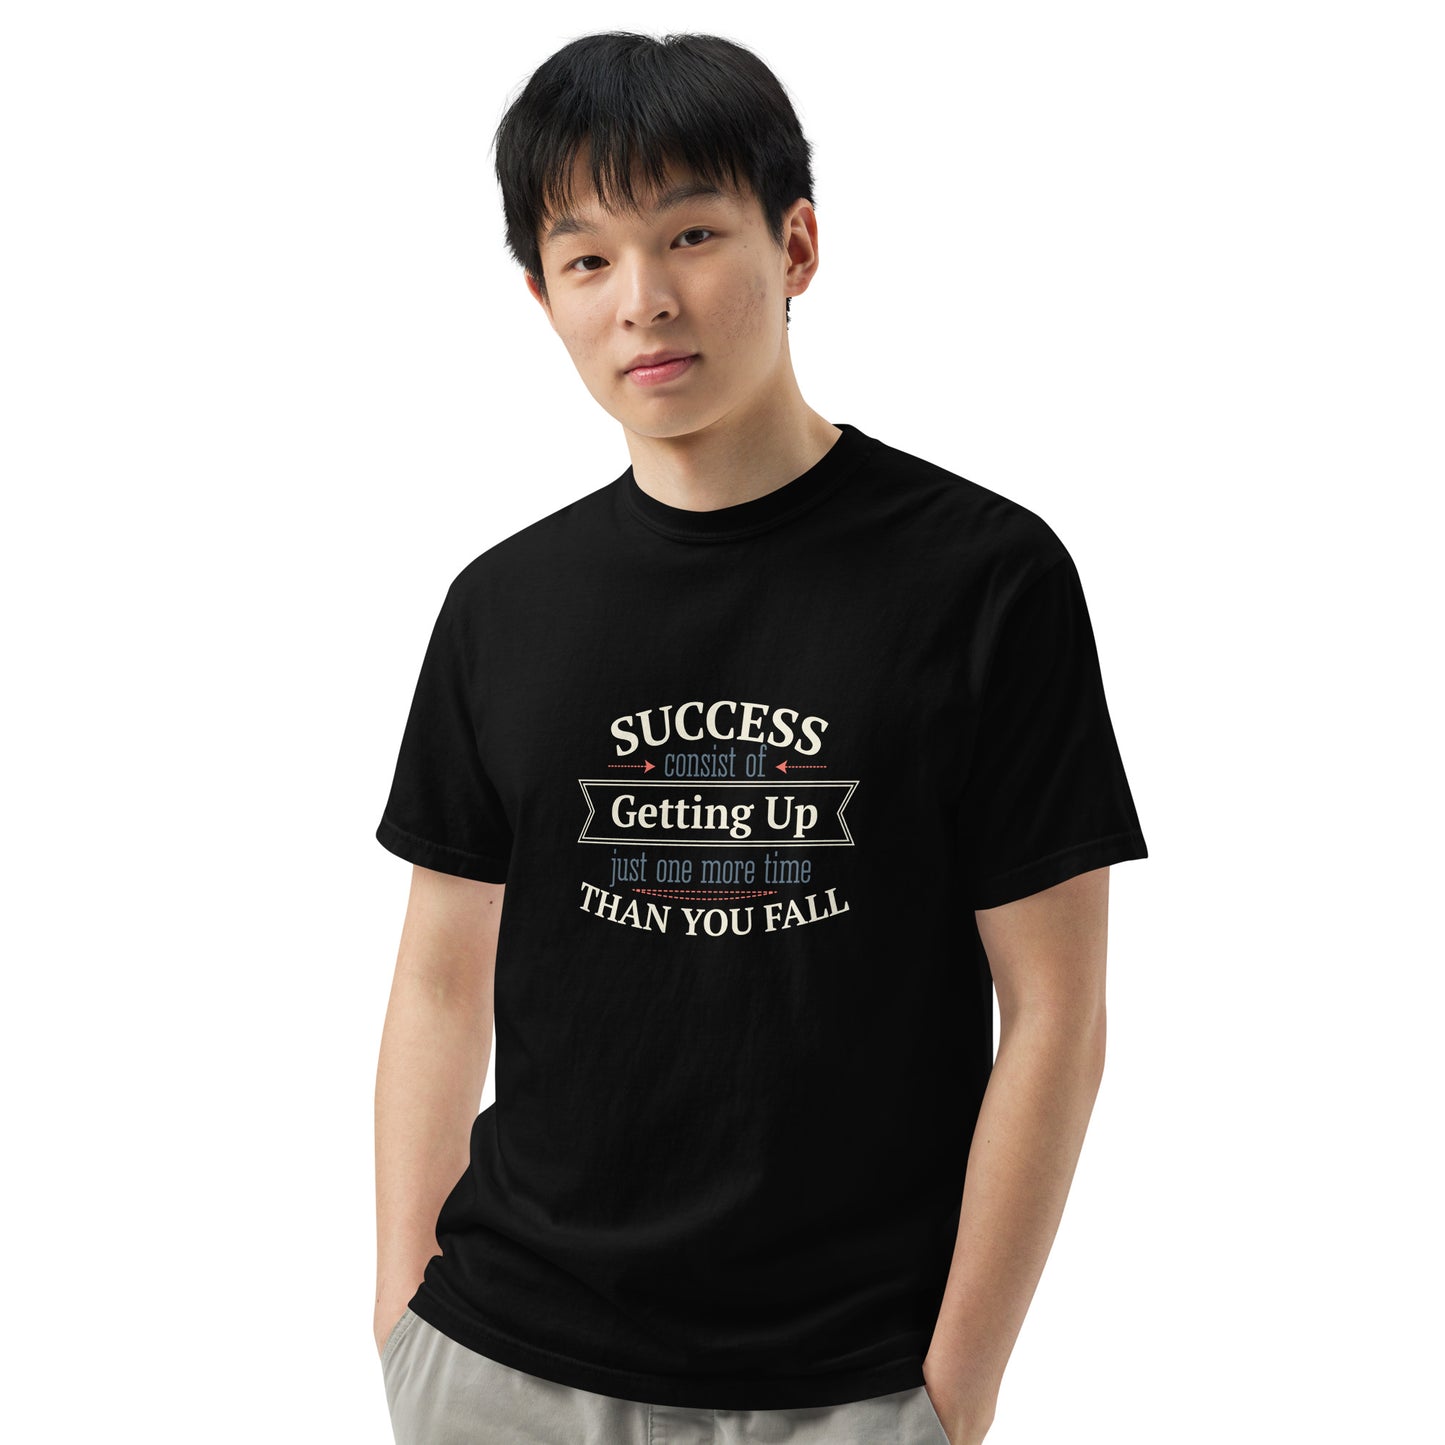 Success garment-dyed heavyweight t-shirt